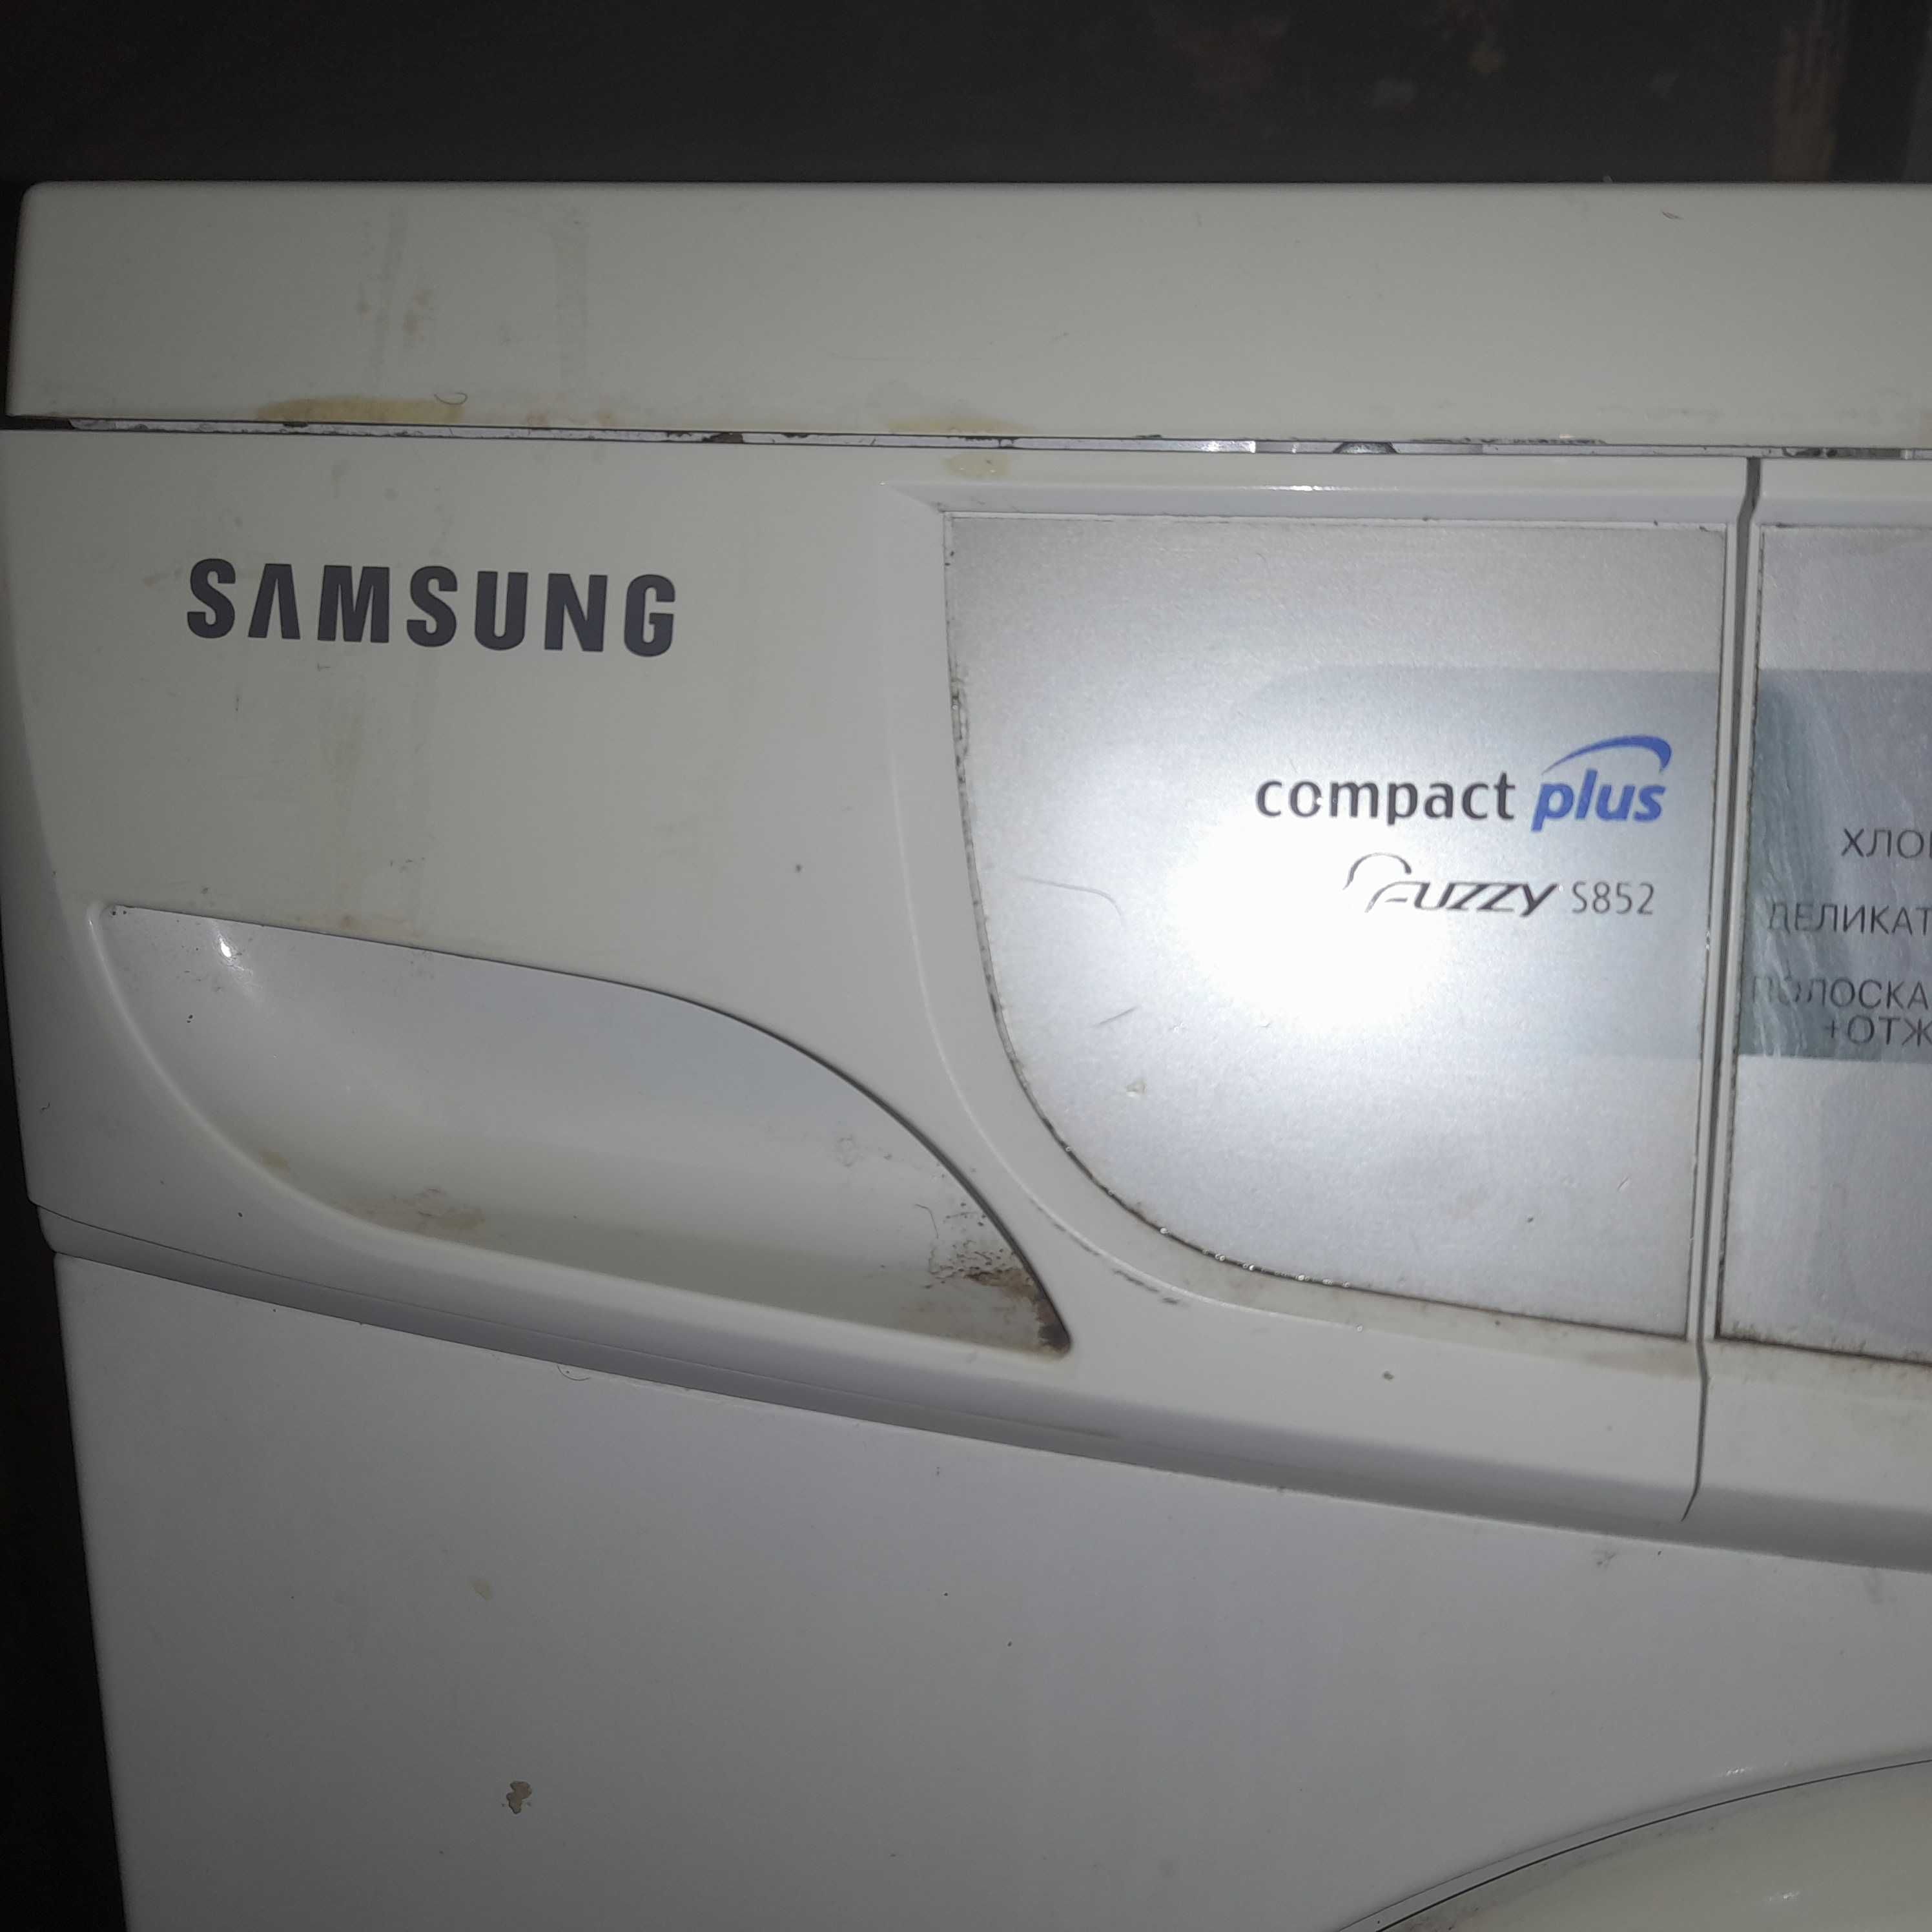 Samsung stralniy mashina srochna prdayotsa bu